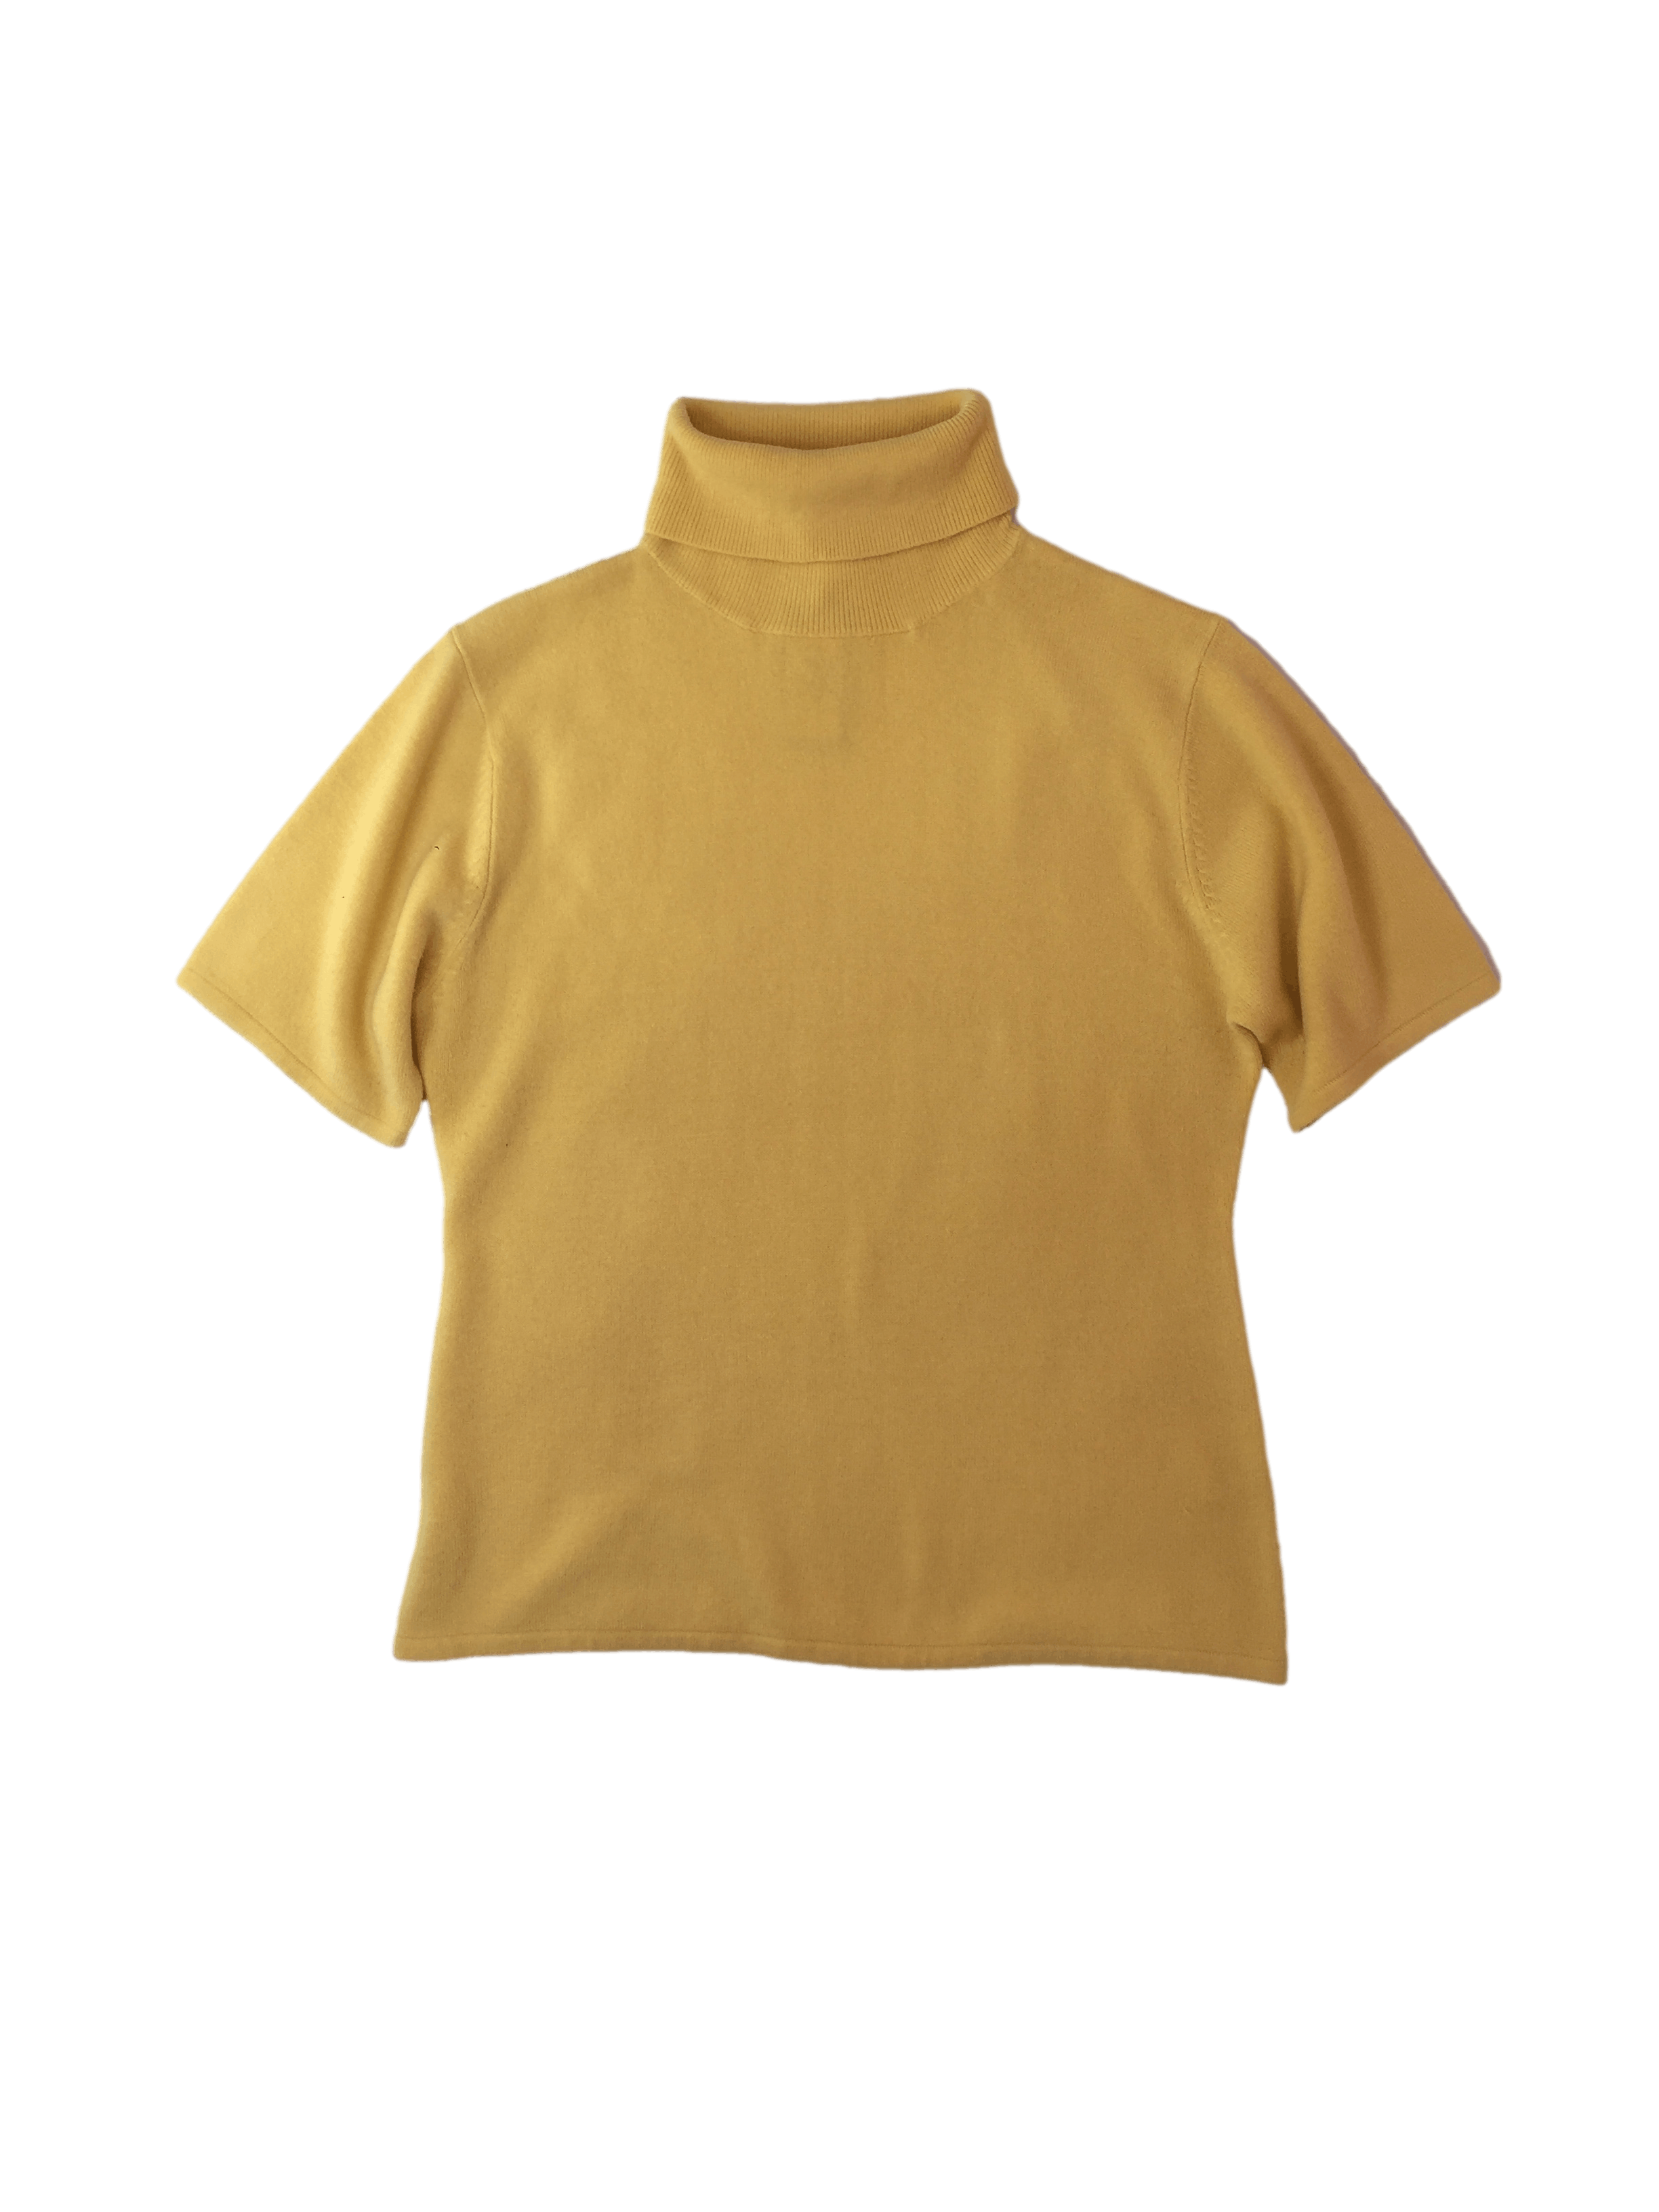 Chompita con cashmere amarilla, suave al taco isabella & giovanni, cuello alto. busto 108 cm, largo 61 cm.